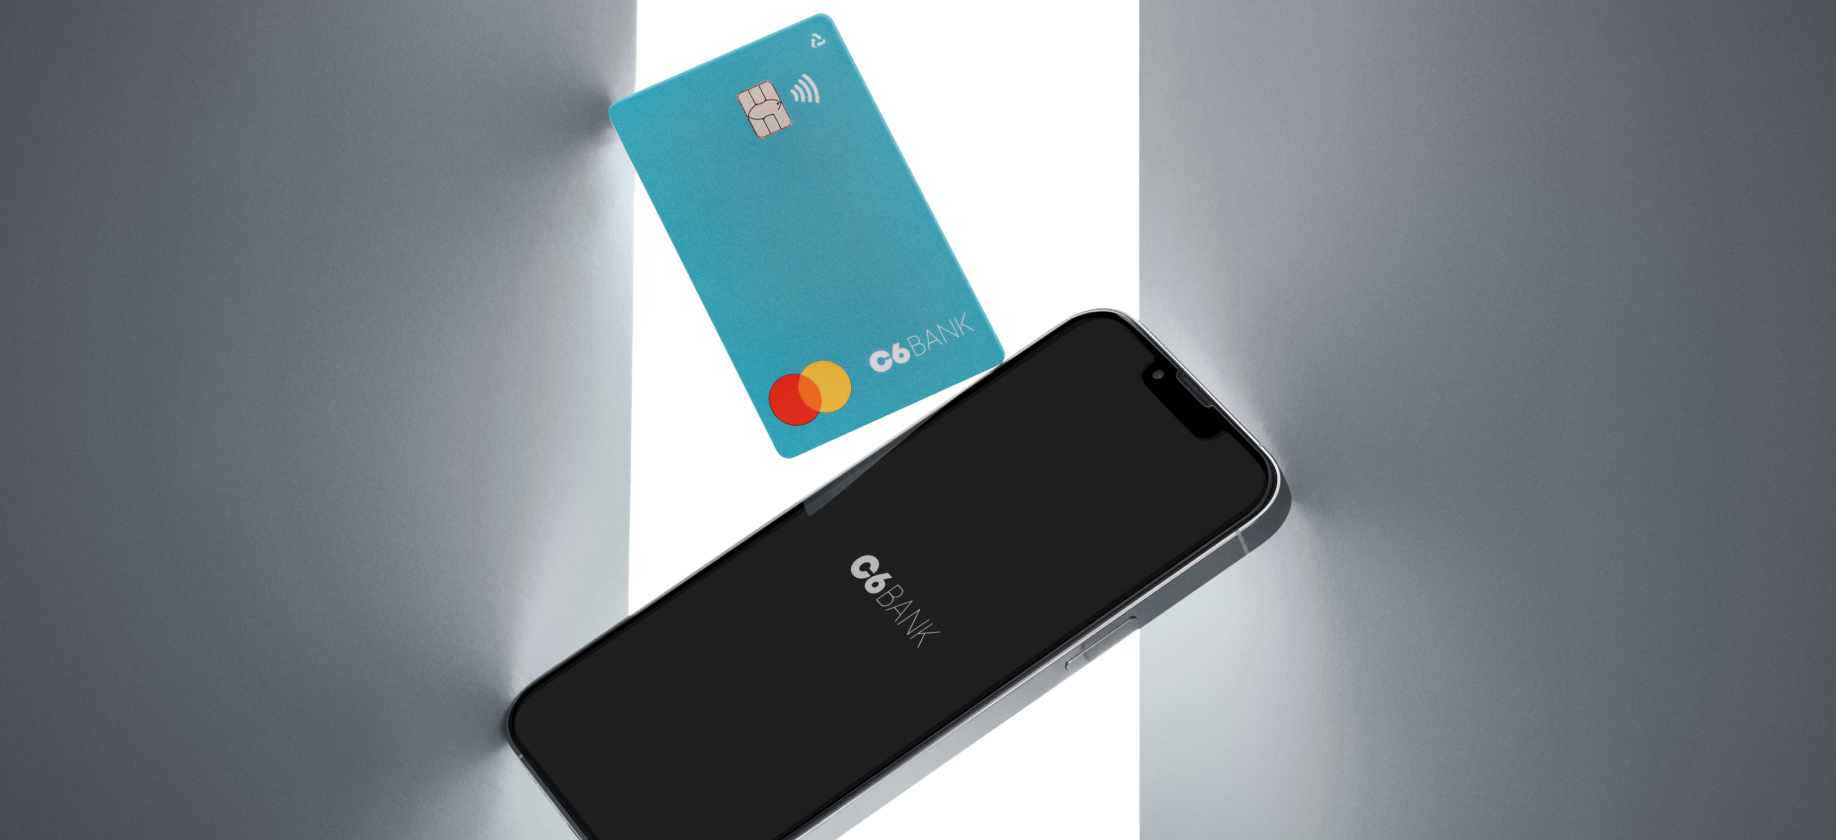 Foto de celular com a tela preta e logo do C6 Bank em branco e um cartão azul turquesa do C6 Bank acima.